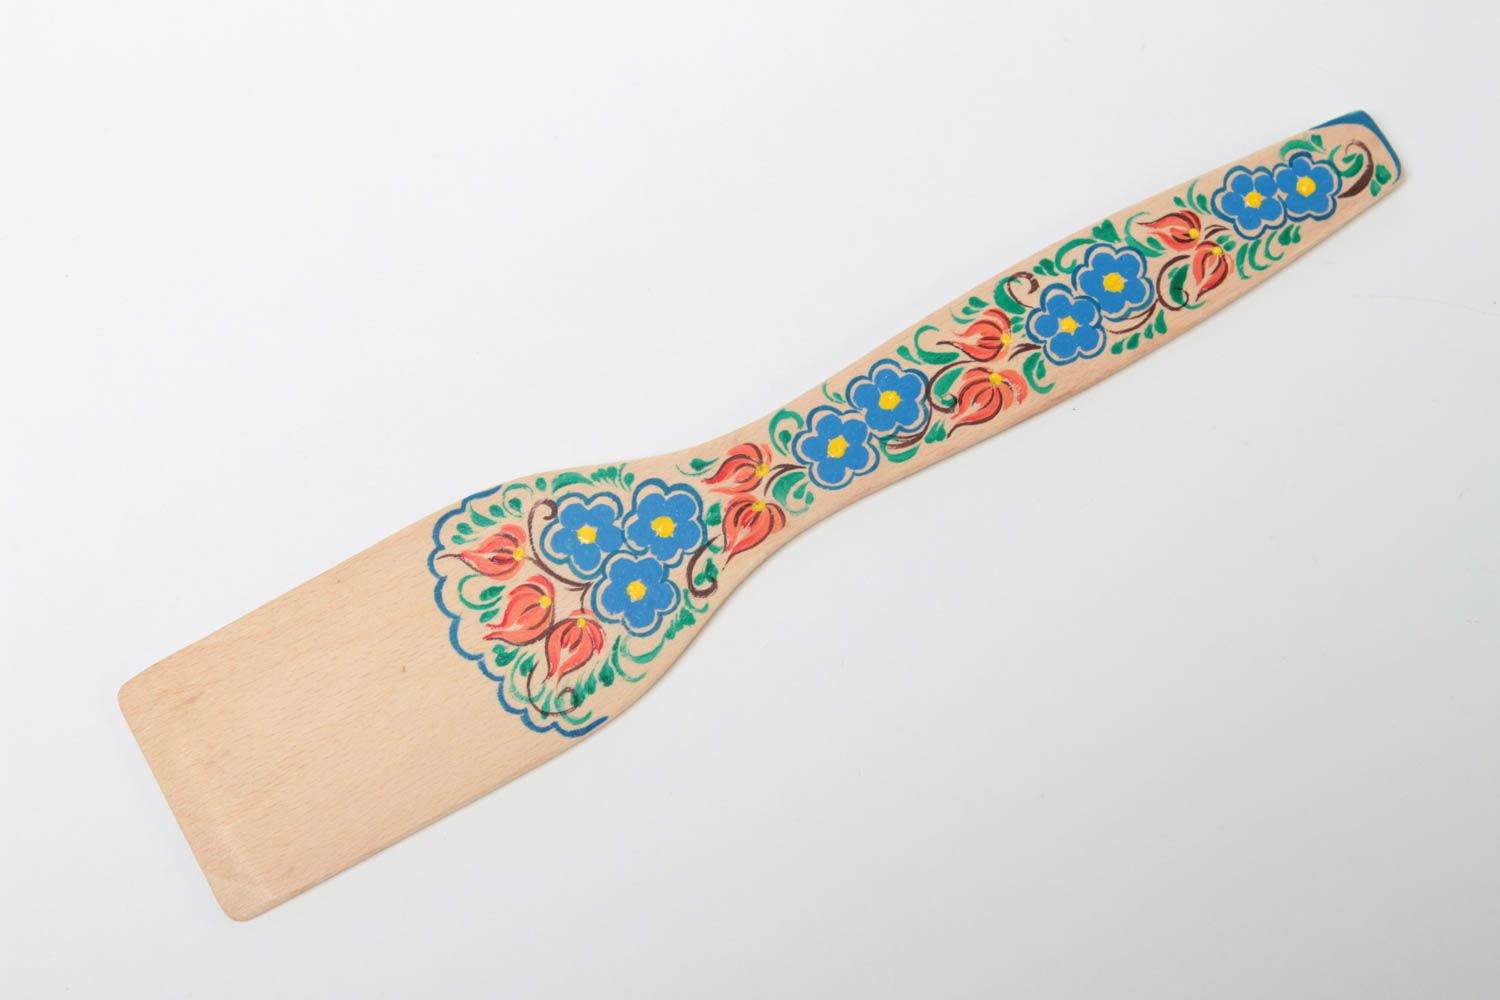 Decorative handmade wooden spatula kitchen accessories designs gift ideas photo 2